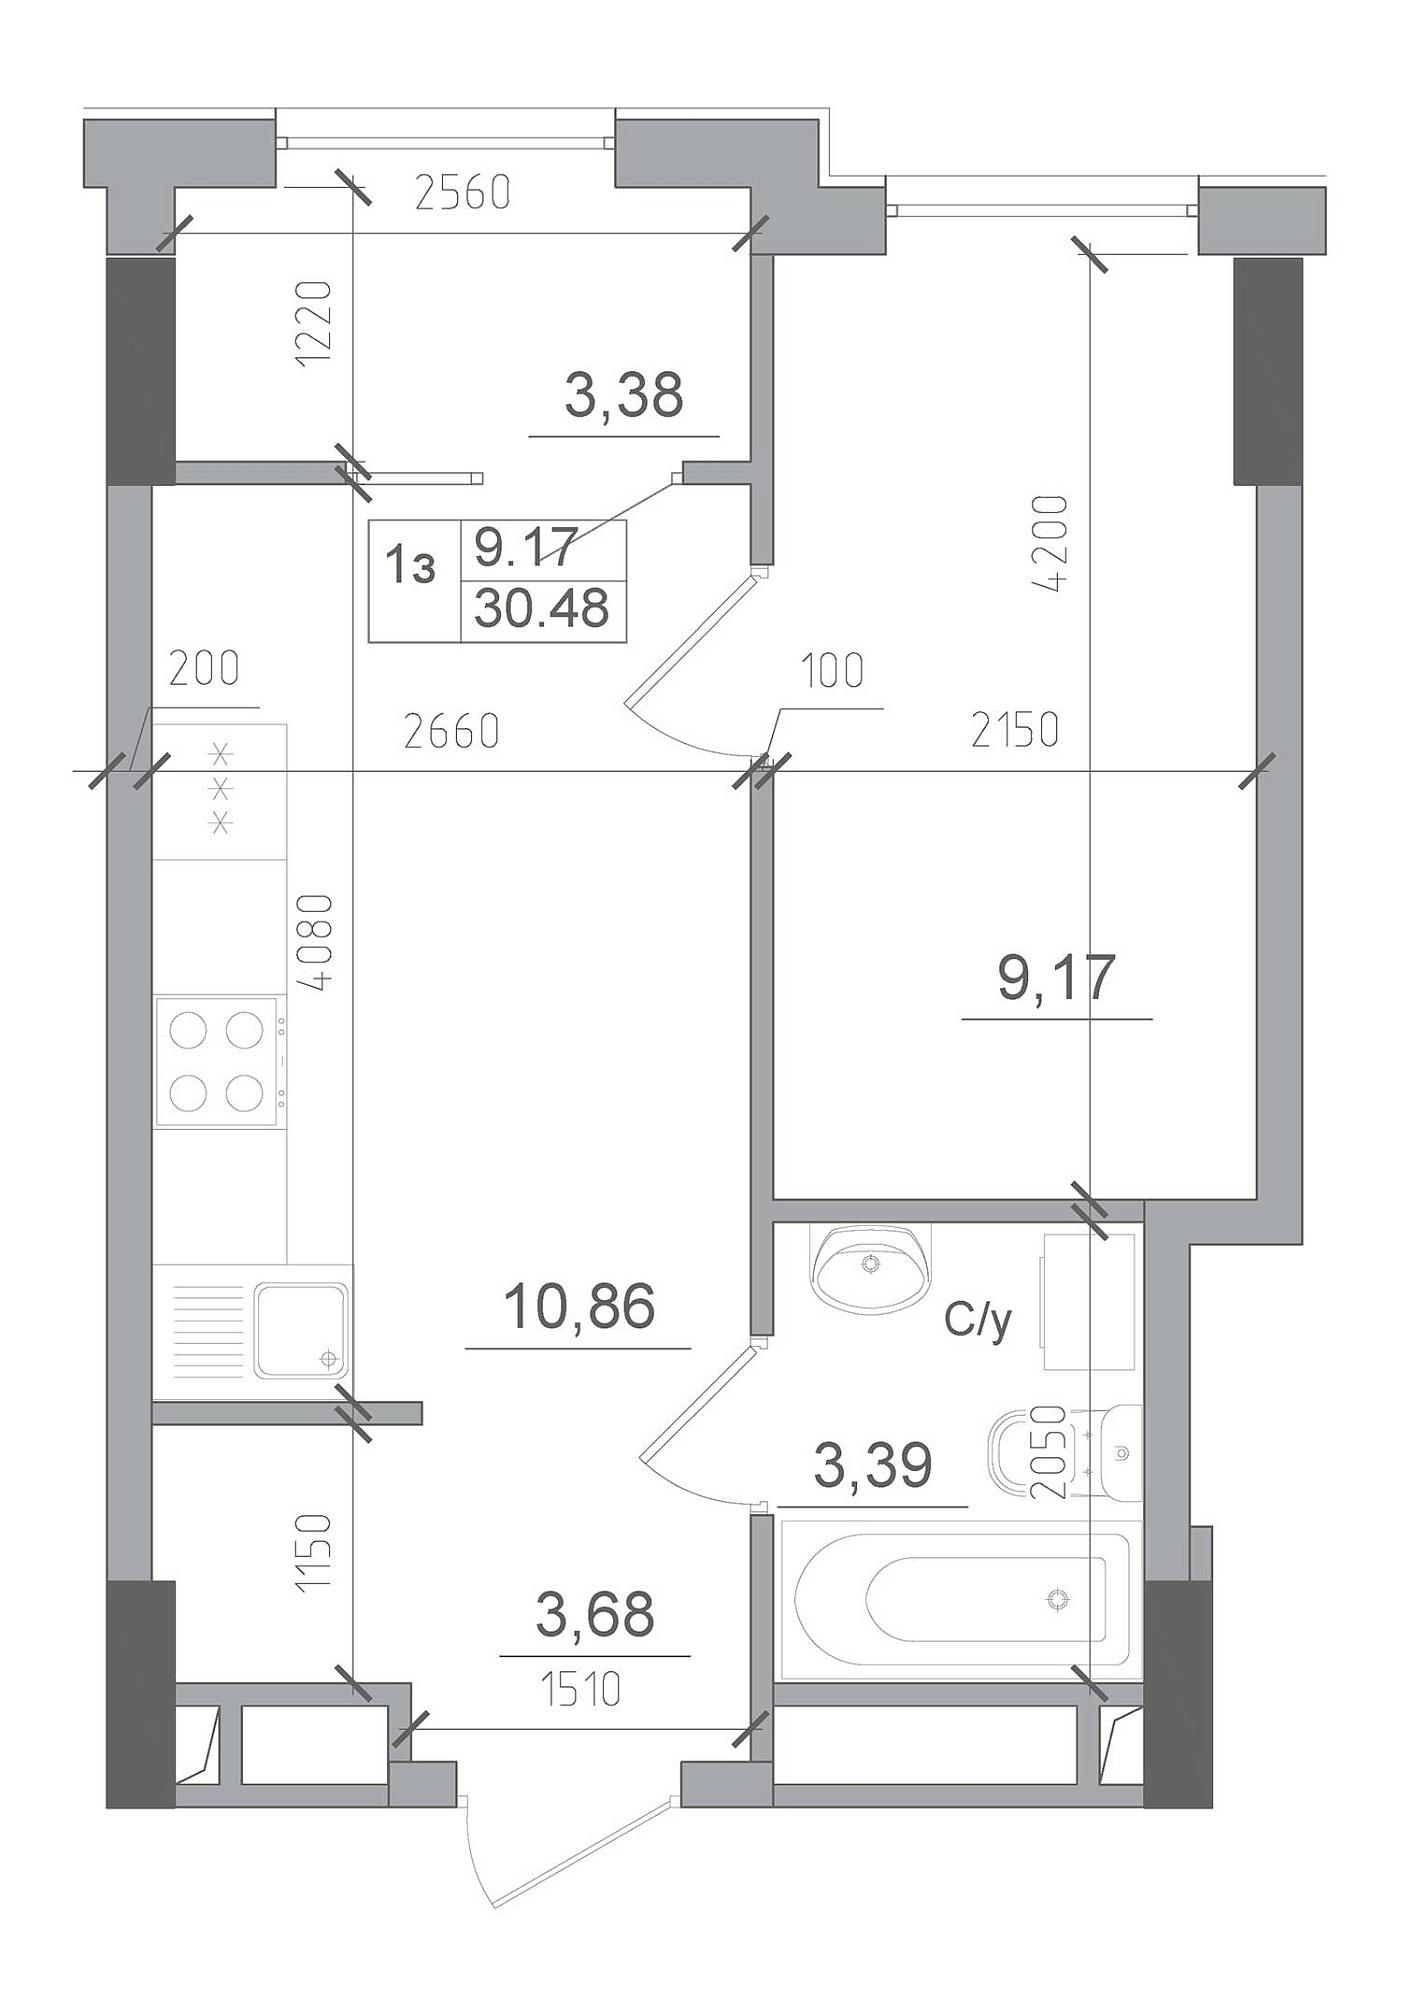 Планування 1-к квартира площею 30.48м2, AB-22-11/00013.